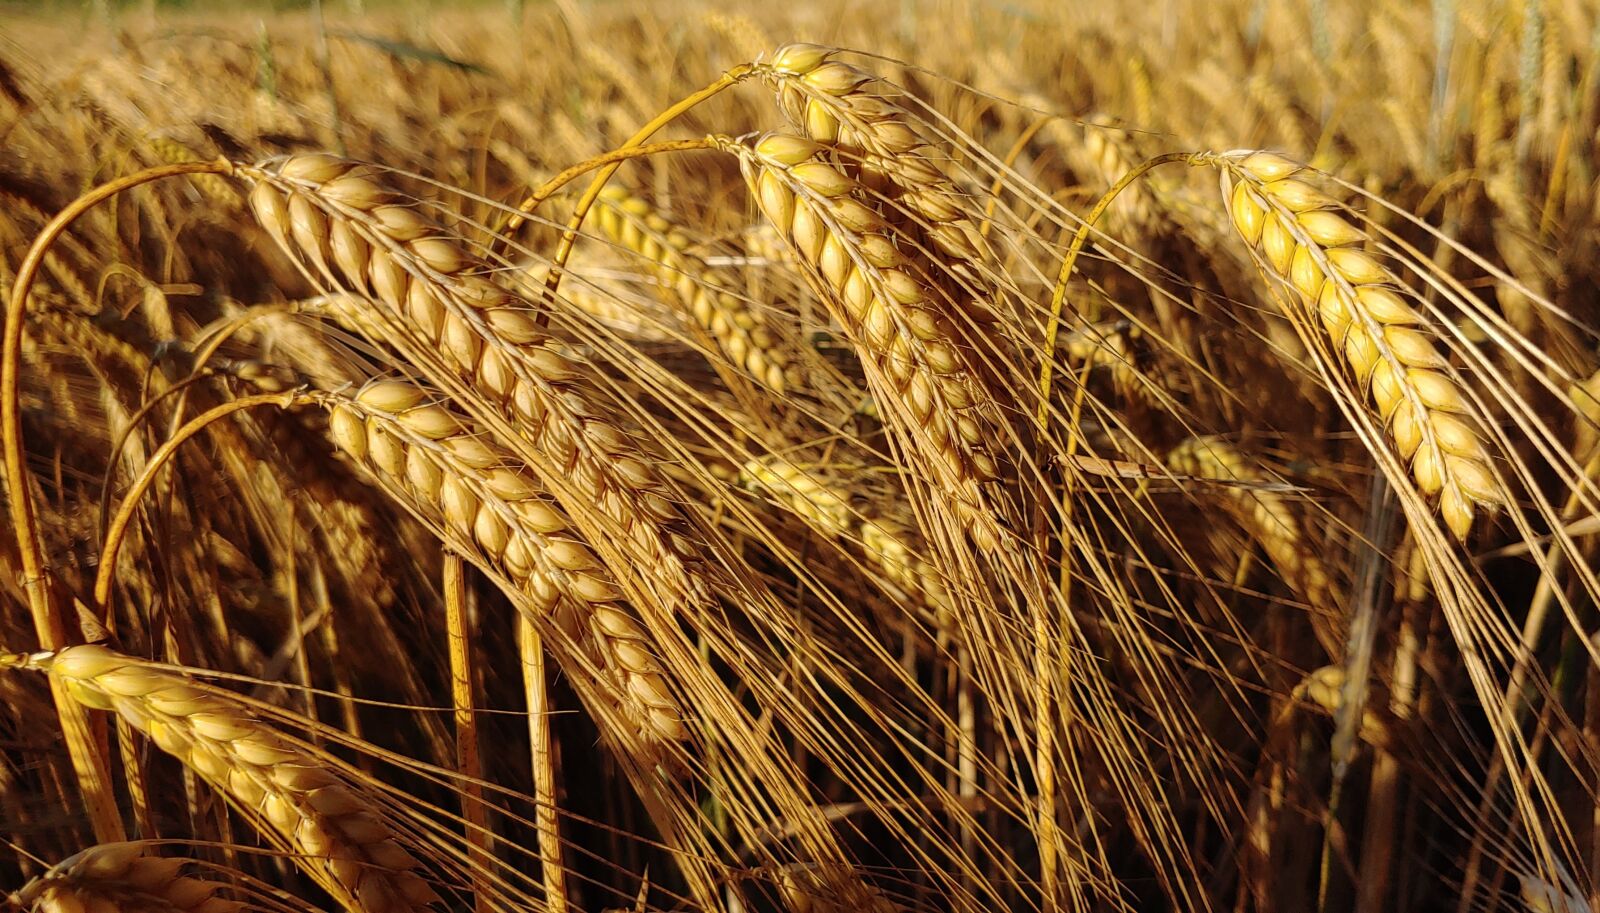 LG LM-V405 sample photo. Agriculture, barley, cereals photography